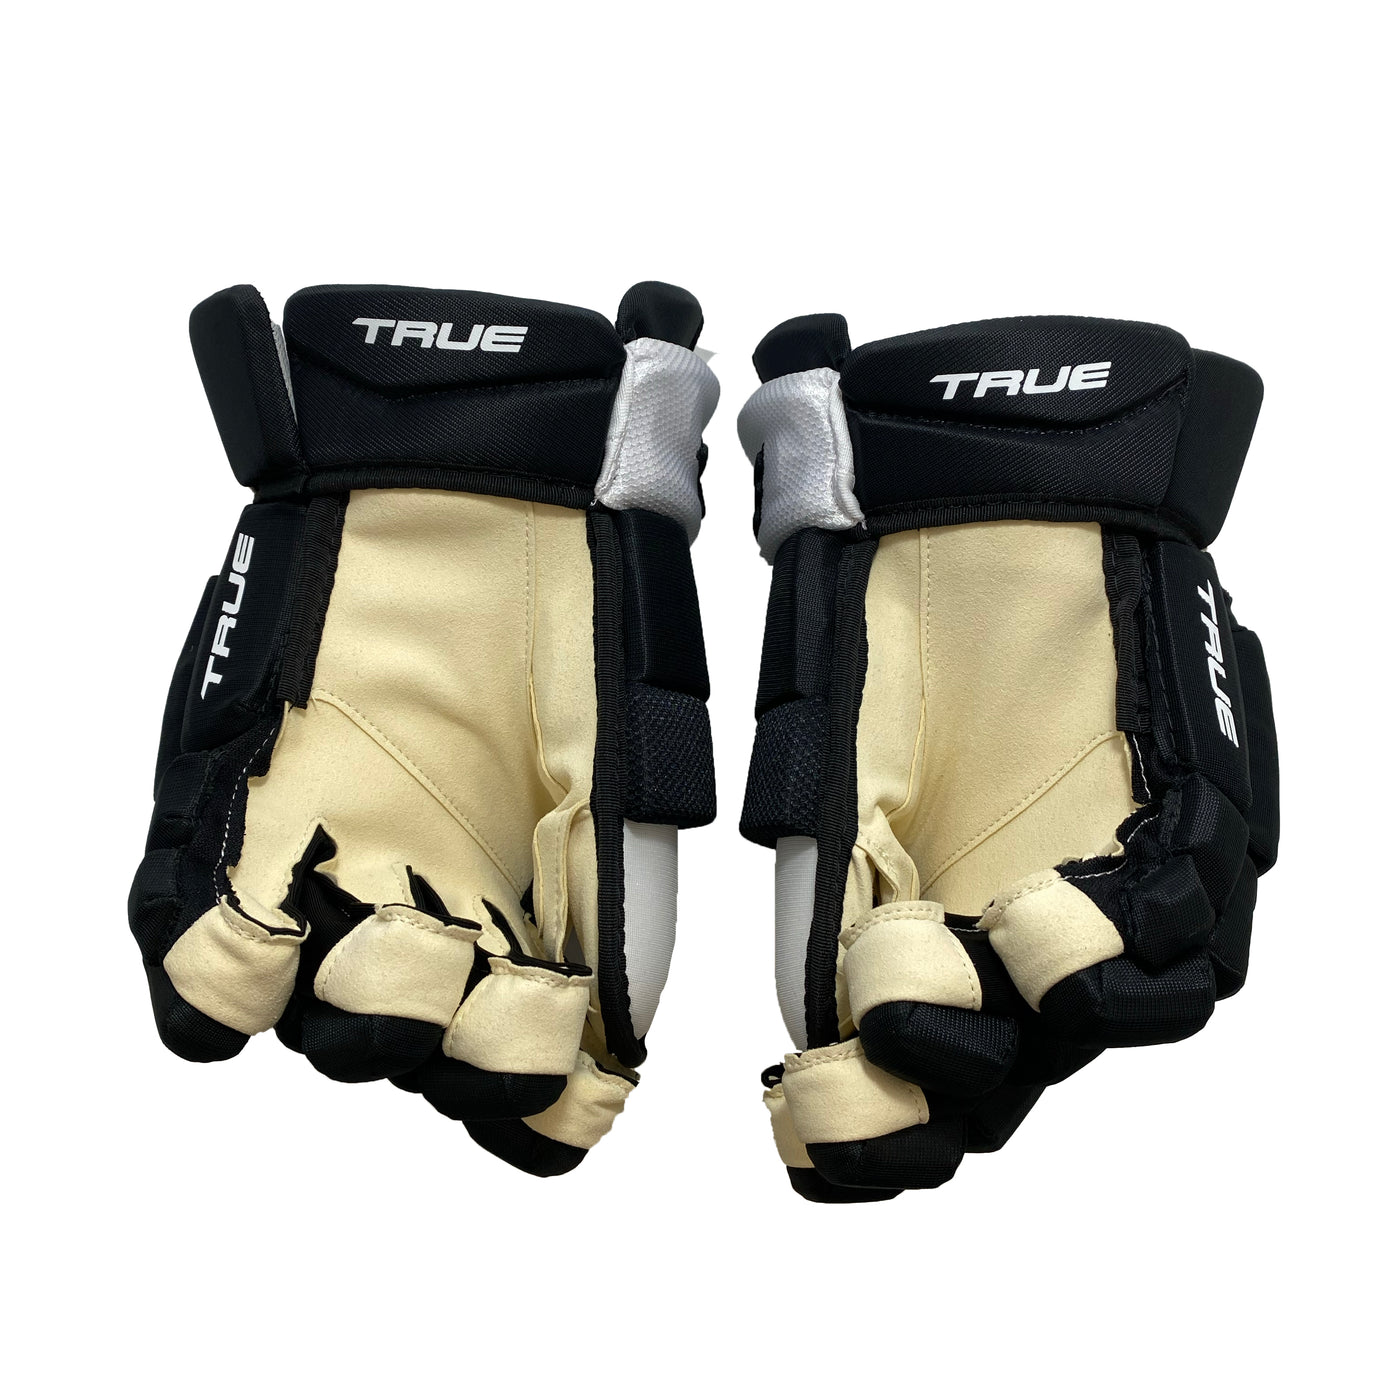 True Catalyst Pro Custom Pittsburgh Penguins Hockey Gloves